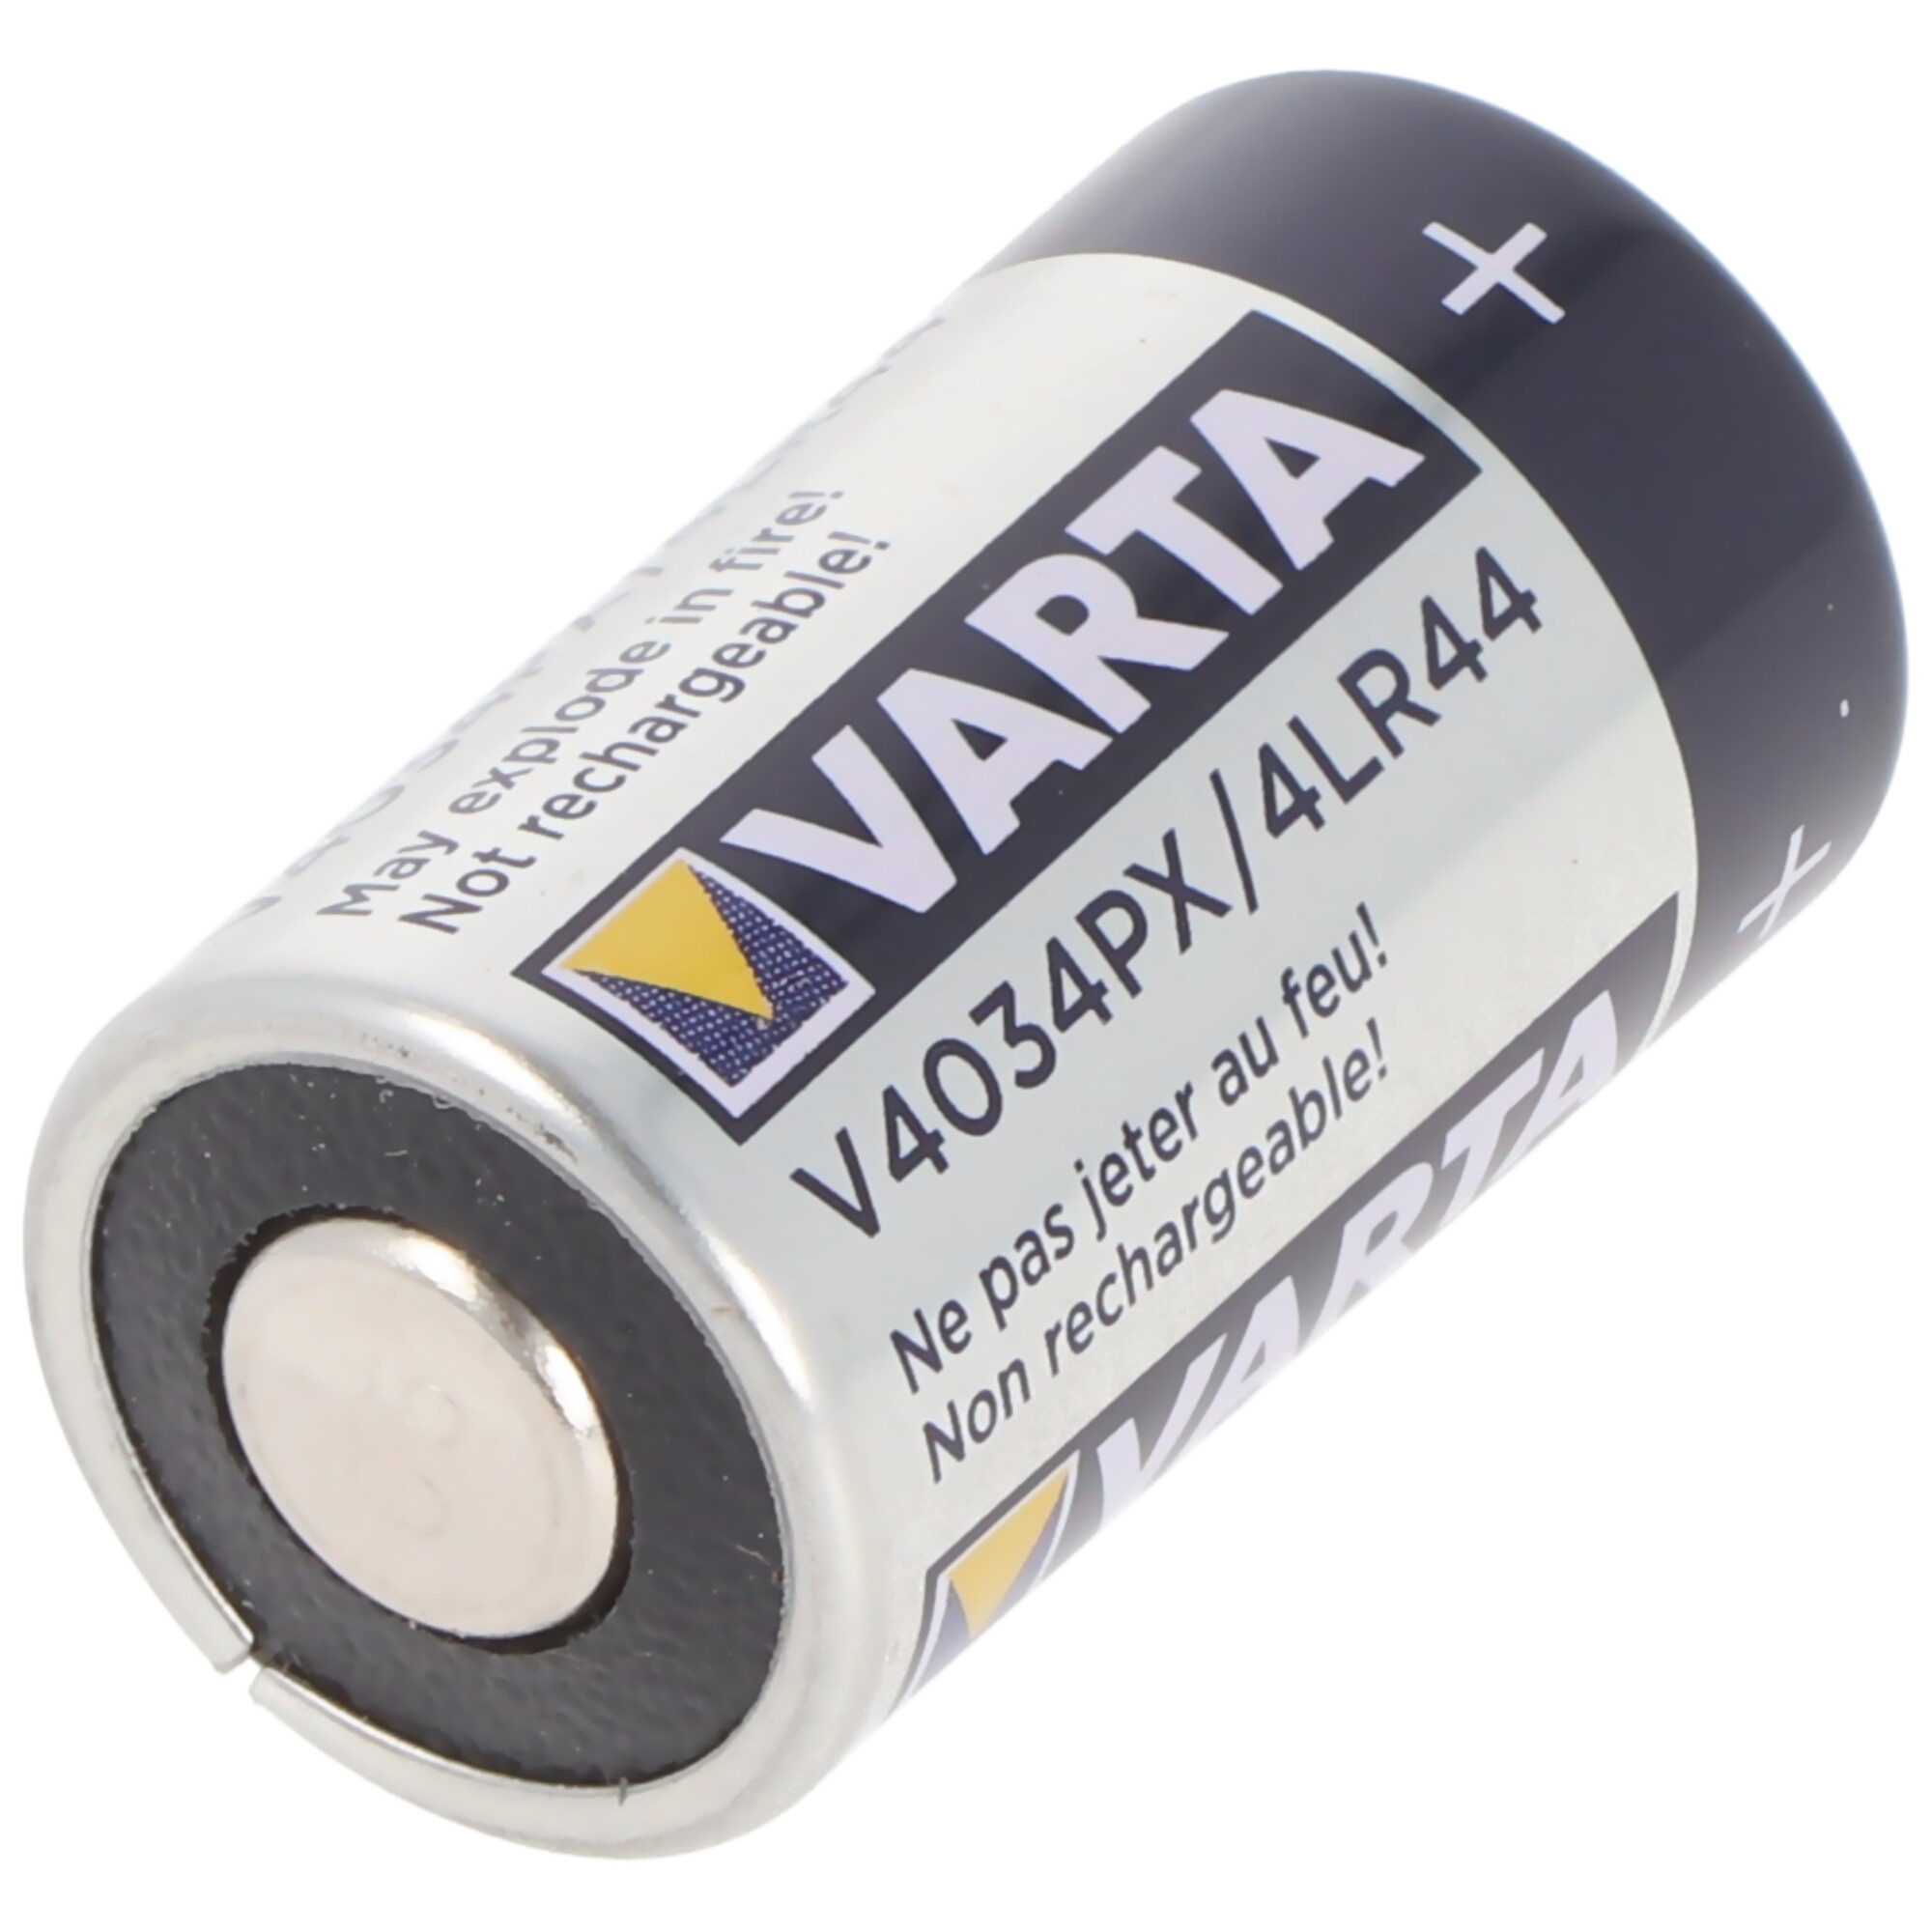 Varta V4034, 4LR44, PX28A, A544, K28A Photo-Batterie